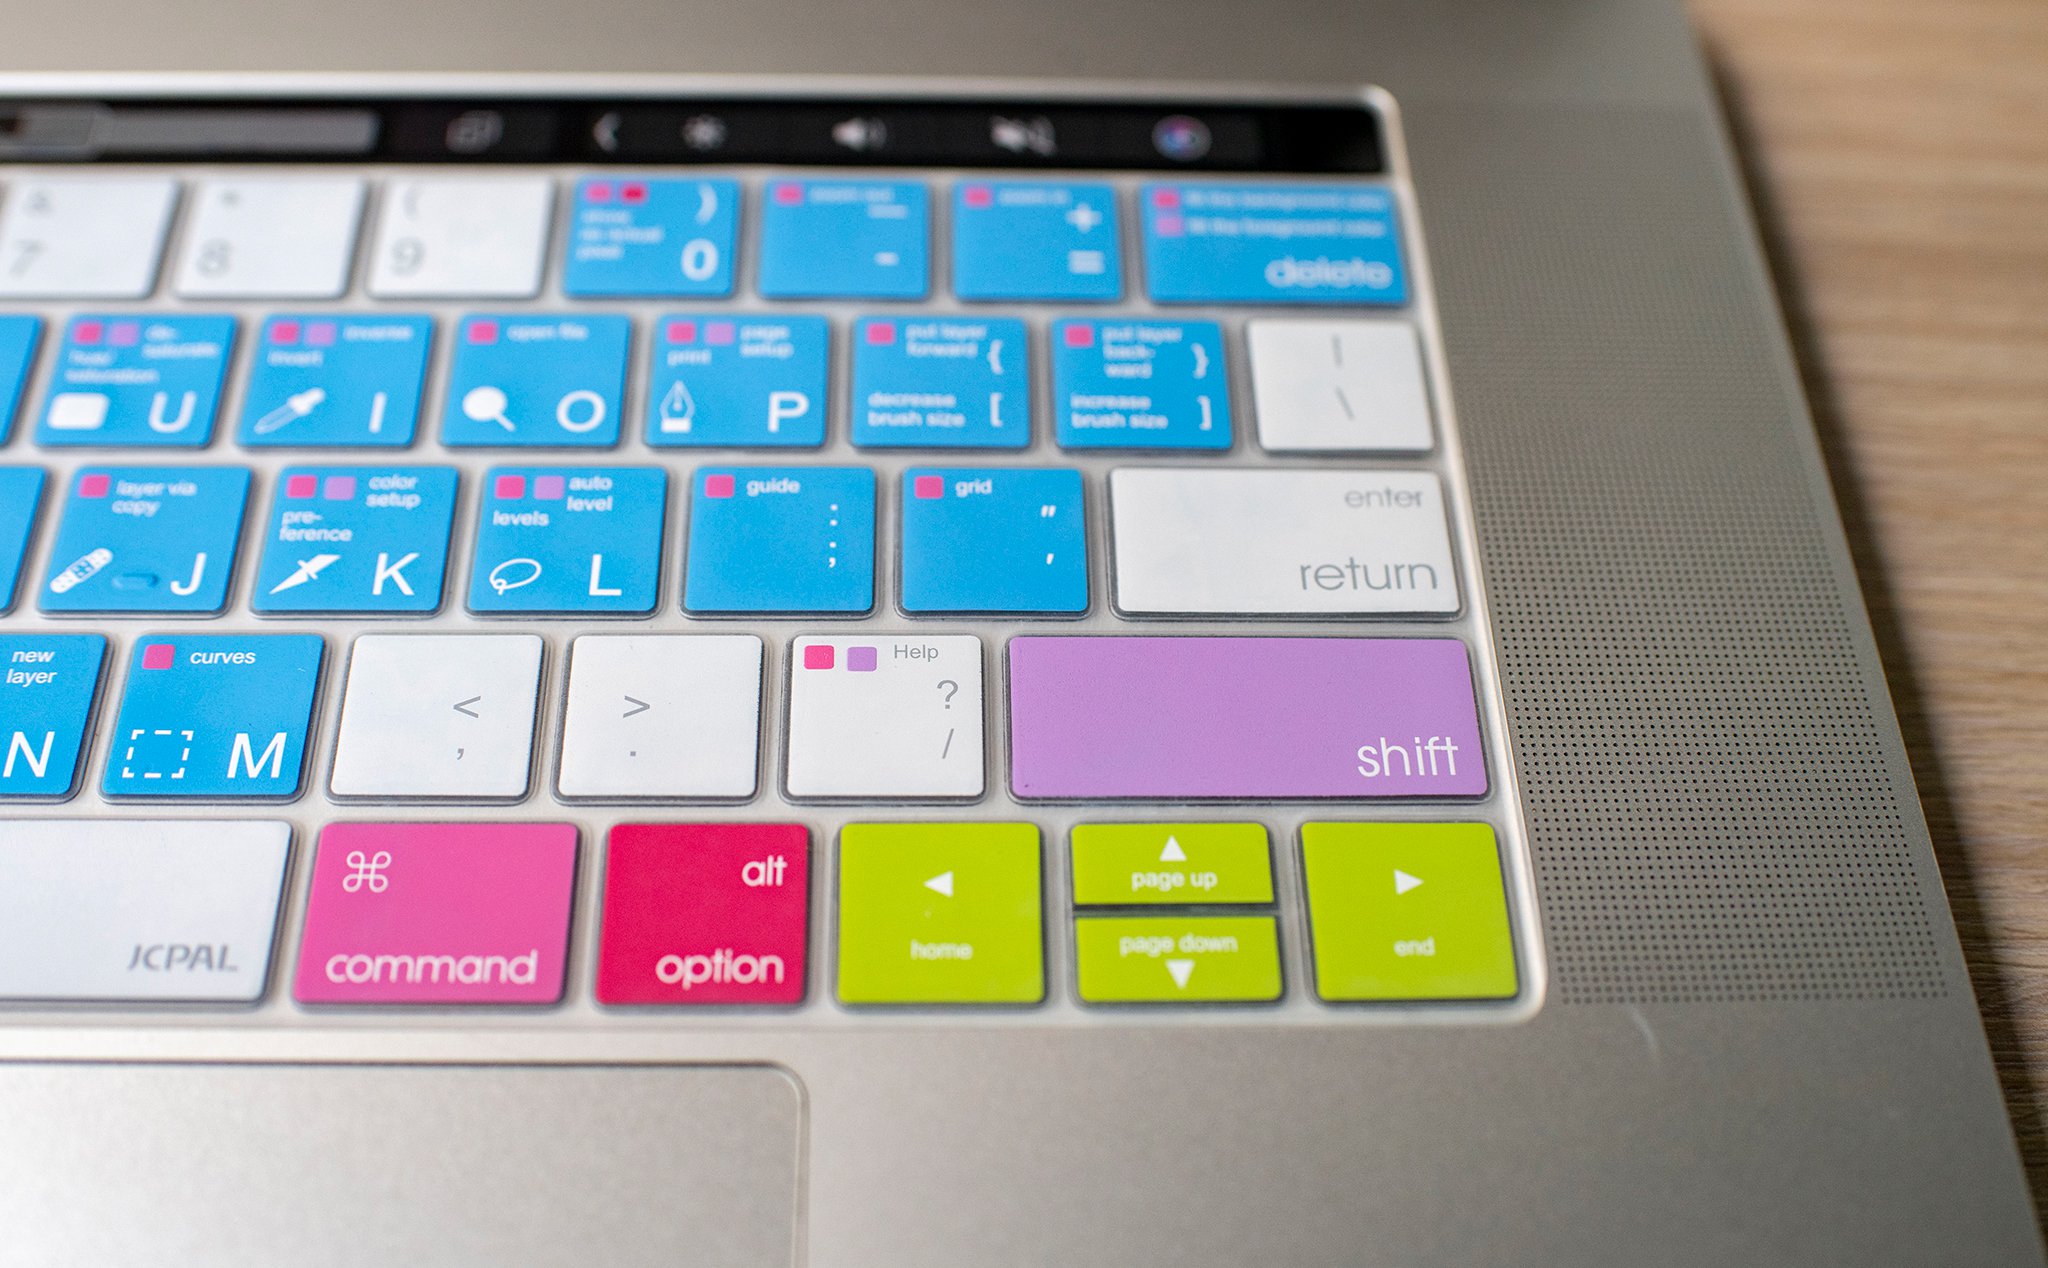 Trên tay tấm phủ bàn phím JCPAL VerSkin cho MacBook Pro: Rất mỏng, bấm phím êm, ngăn bụi